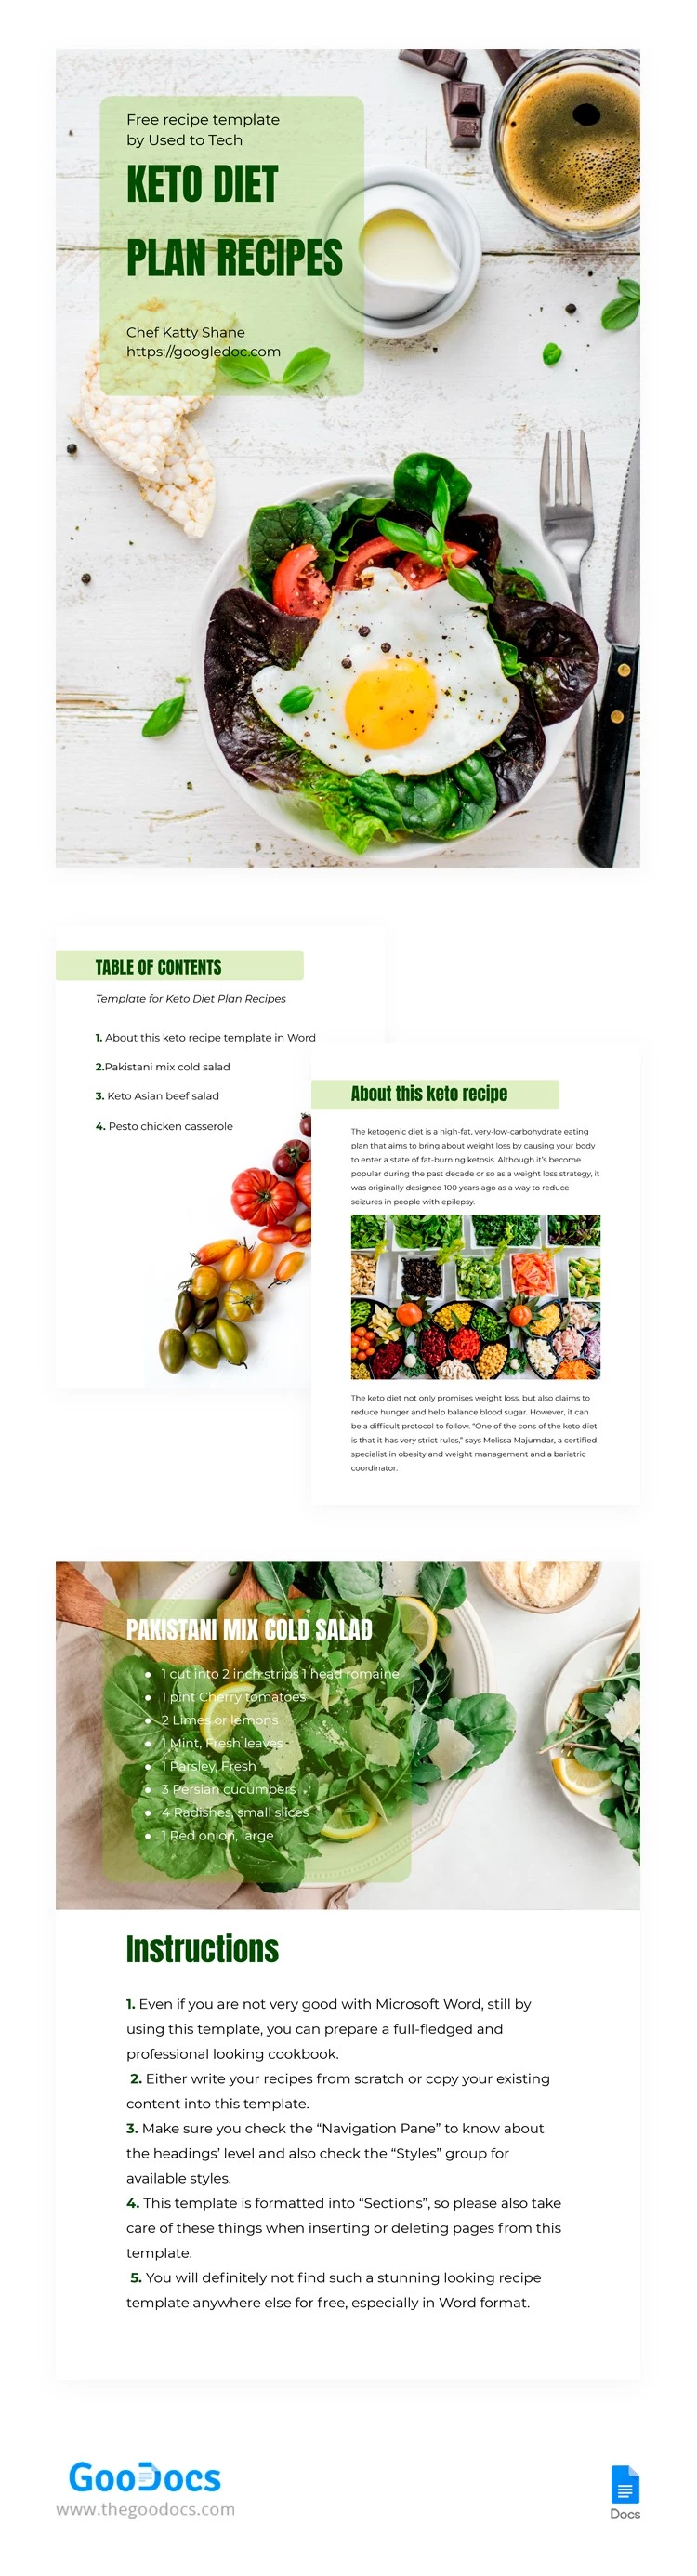 Libro de la dieta cetogénica - free Google Docs Template - 10062149